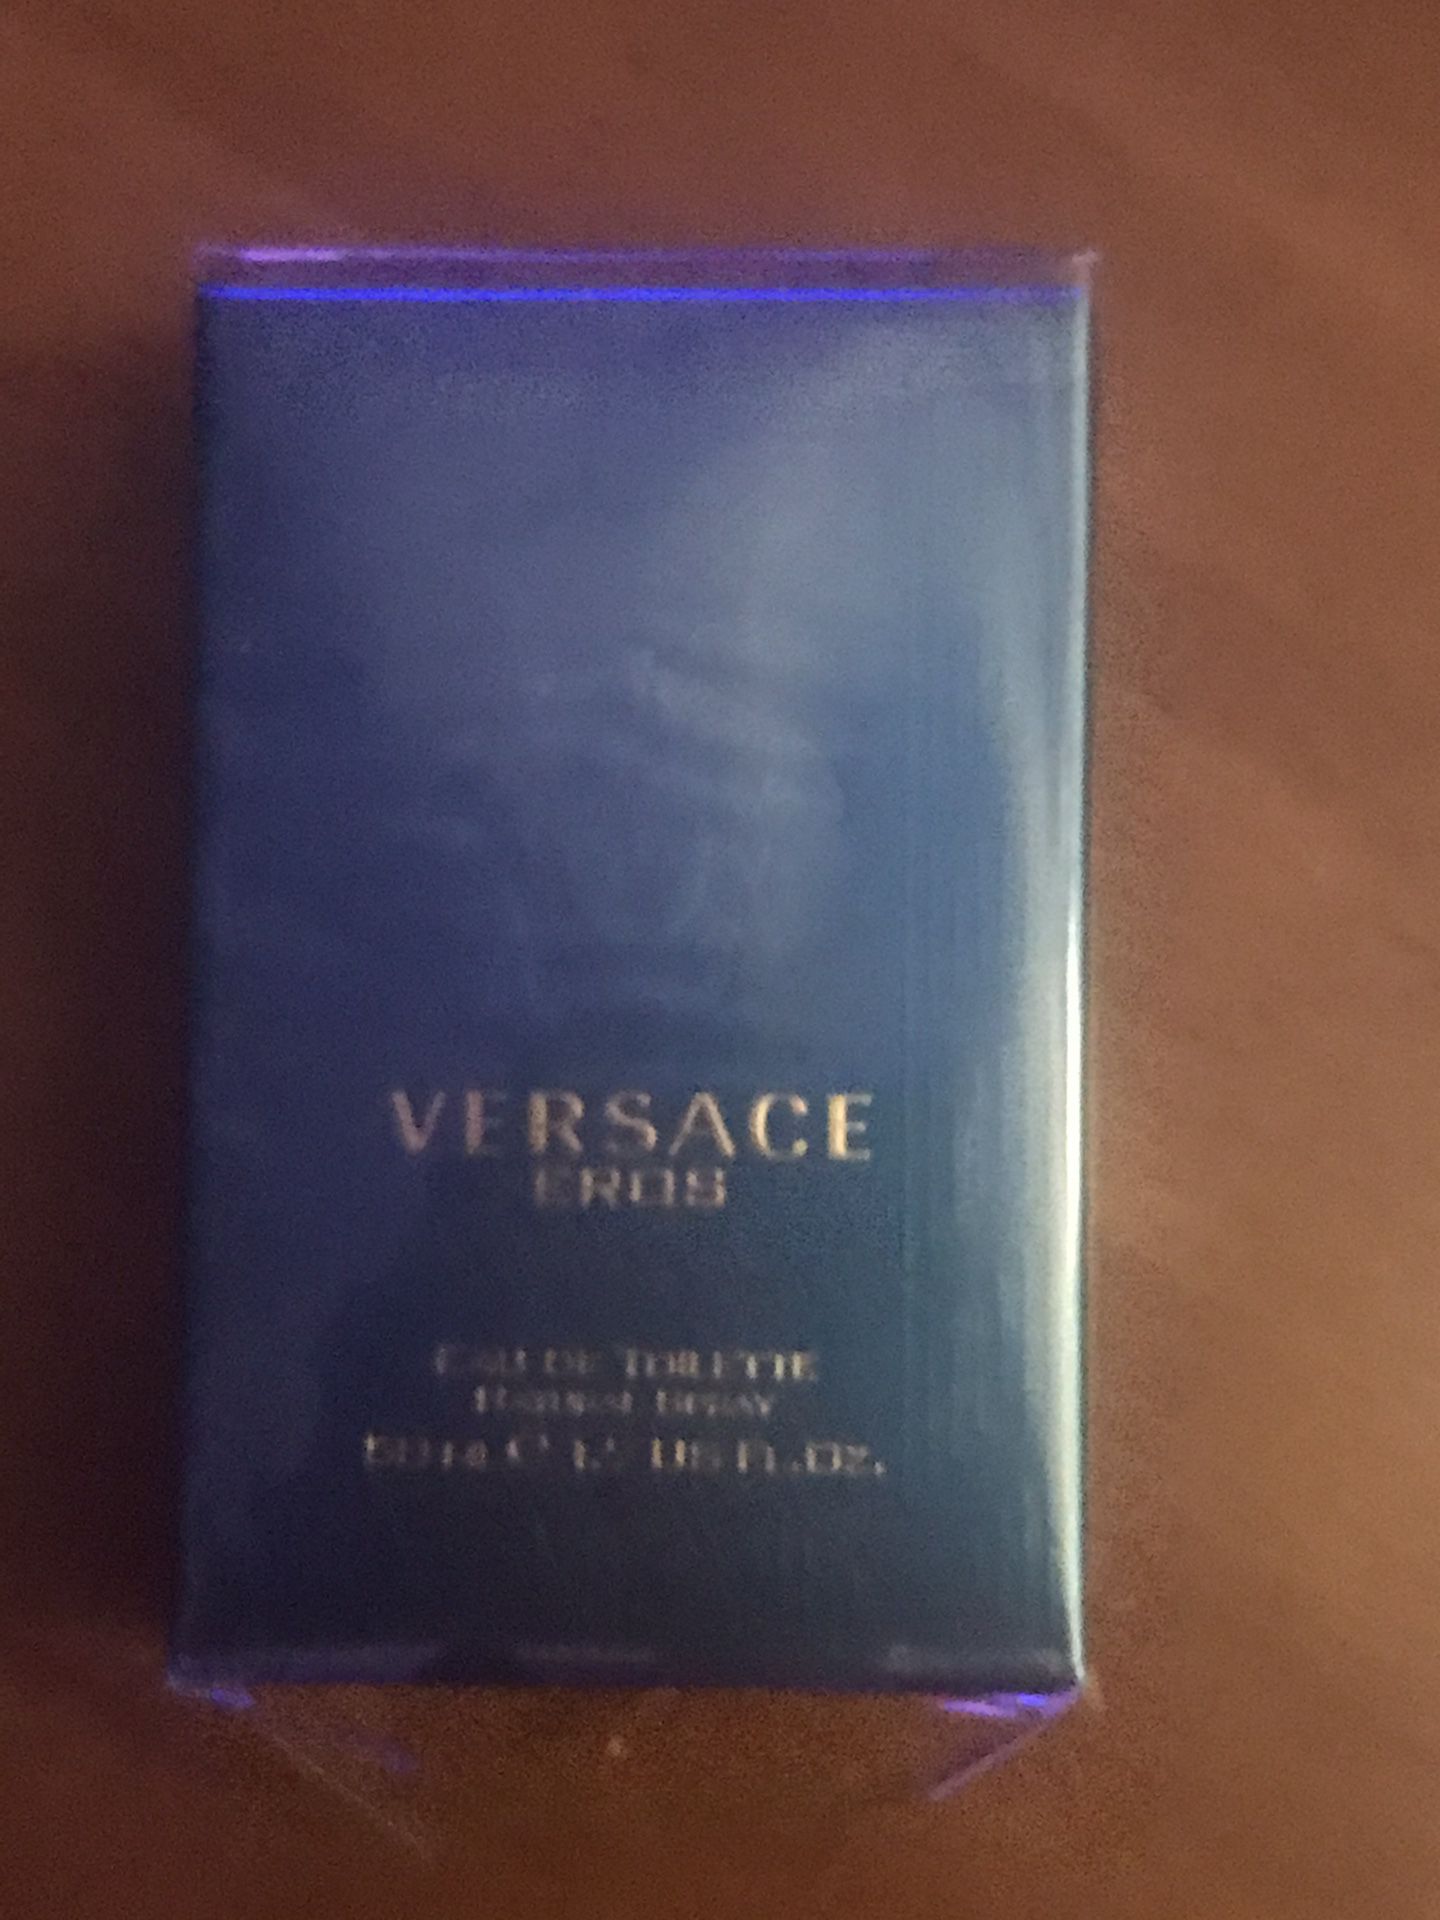 Versace 1.7 perfume/brand new